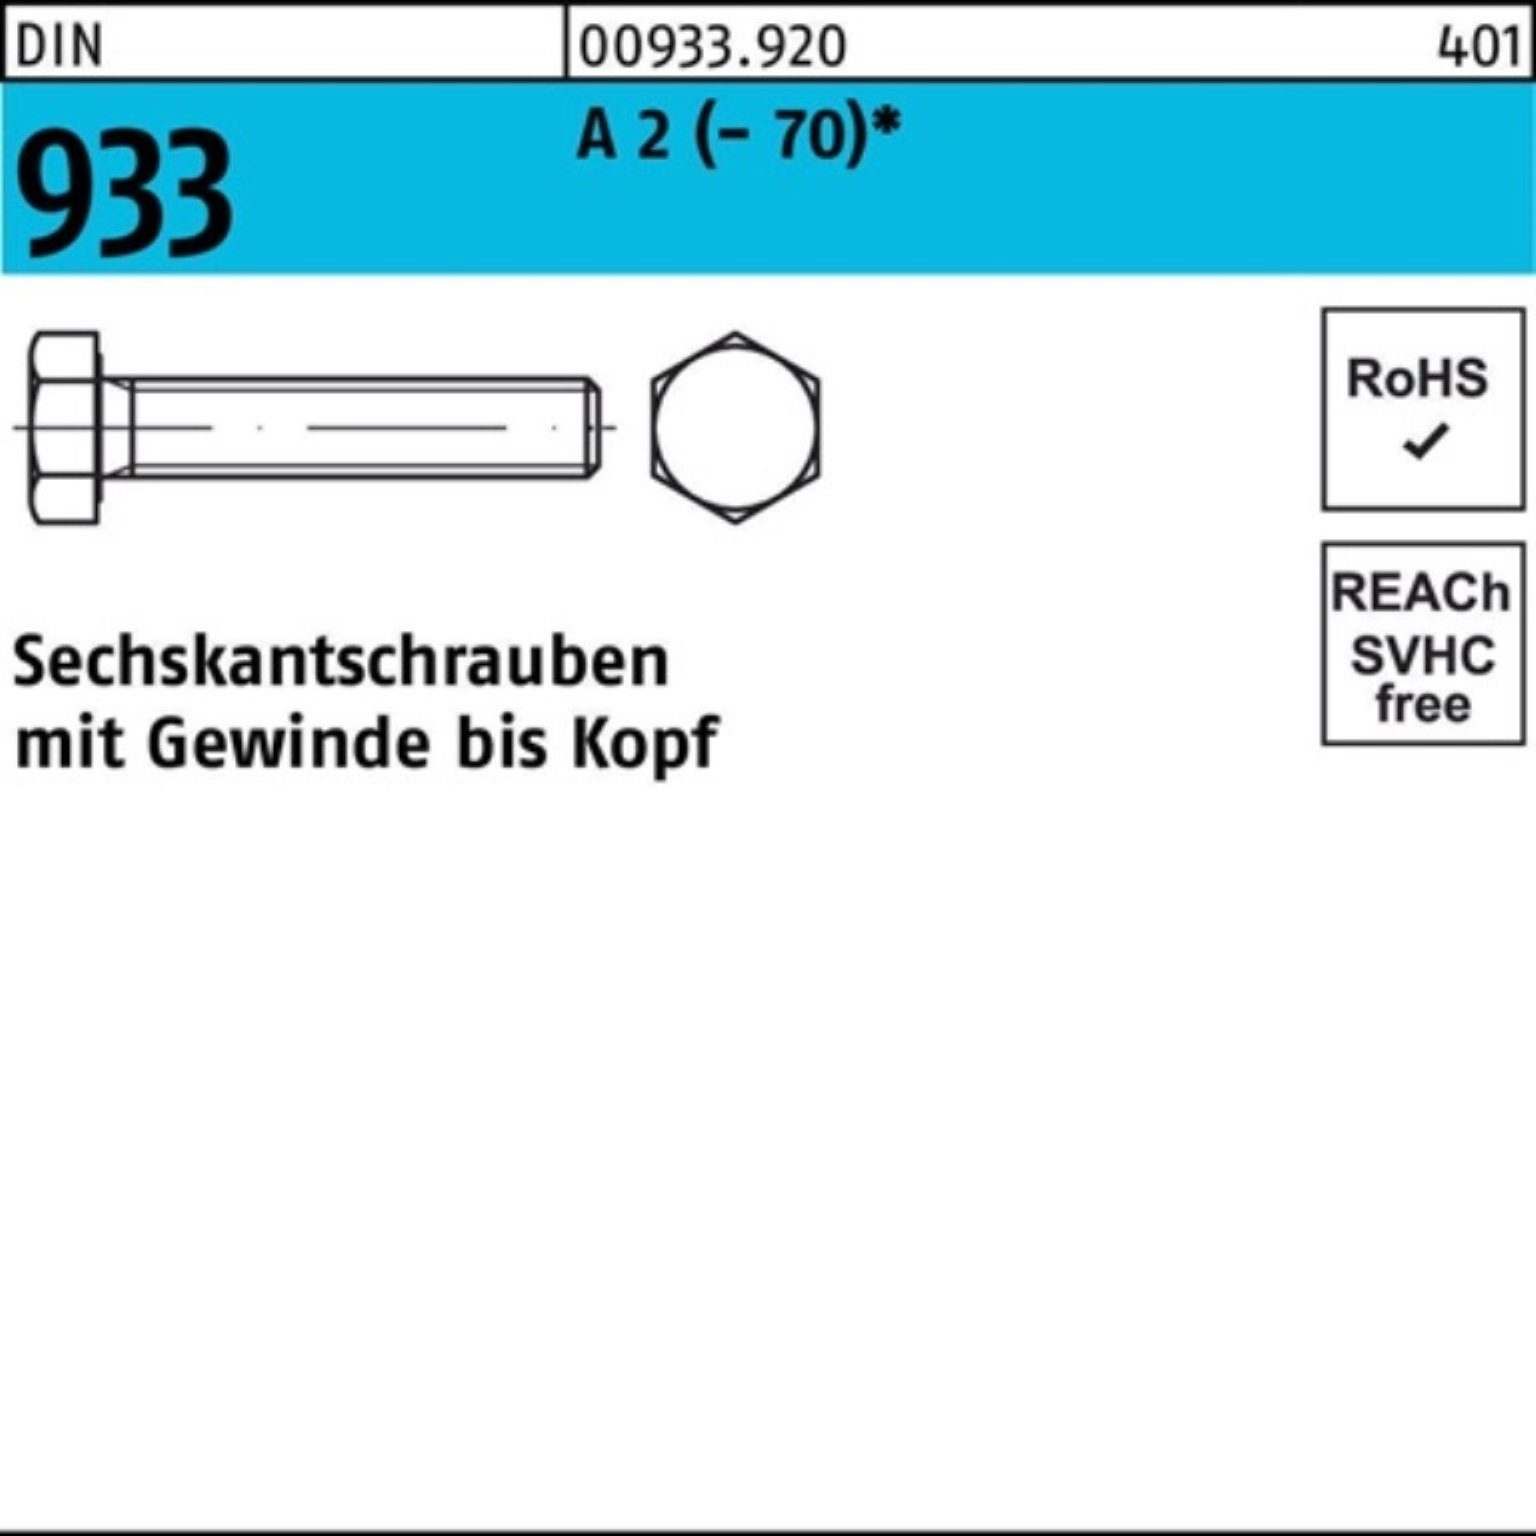 Reyher Sechskantschraube 500er Pack D VG 500 Sechskantschraube 933 DIN (70) 10 M6x Stück A 2